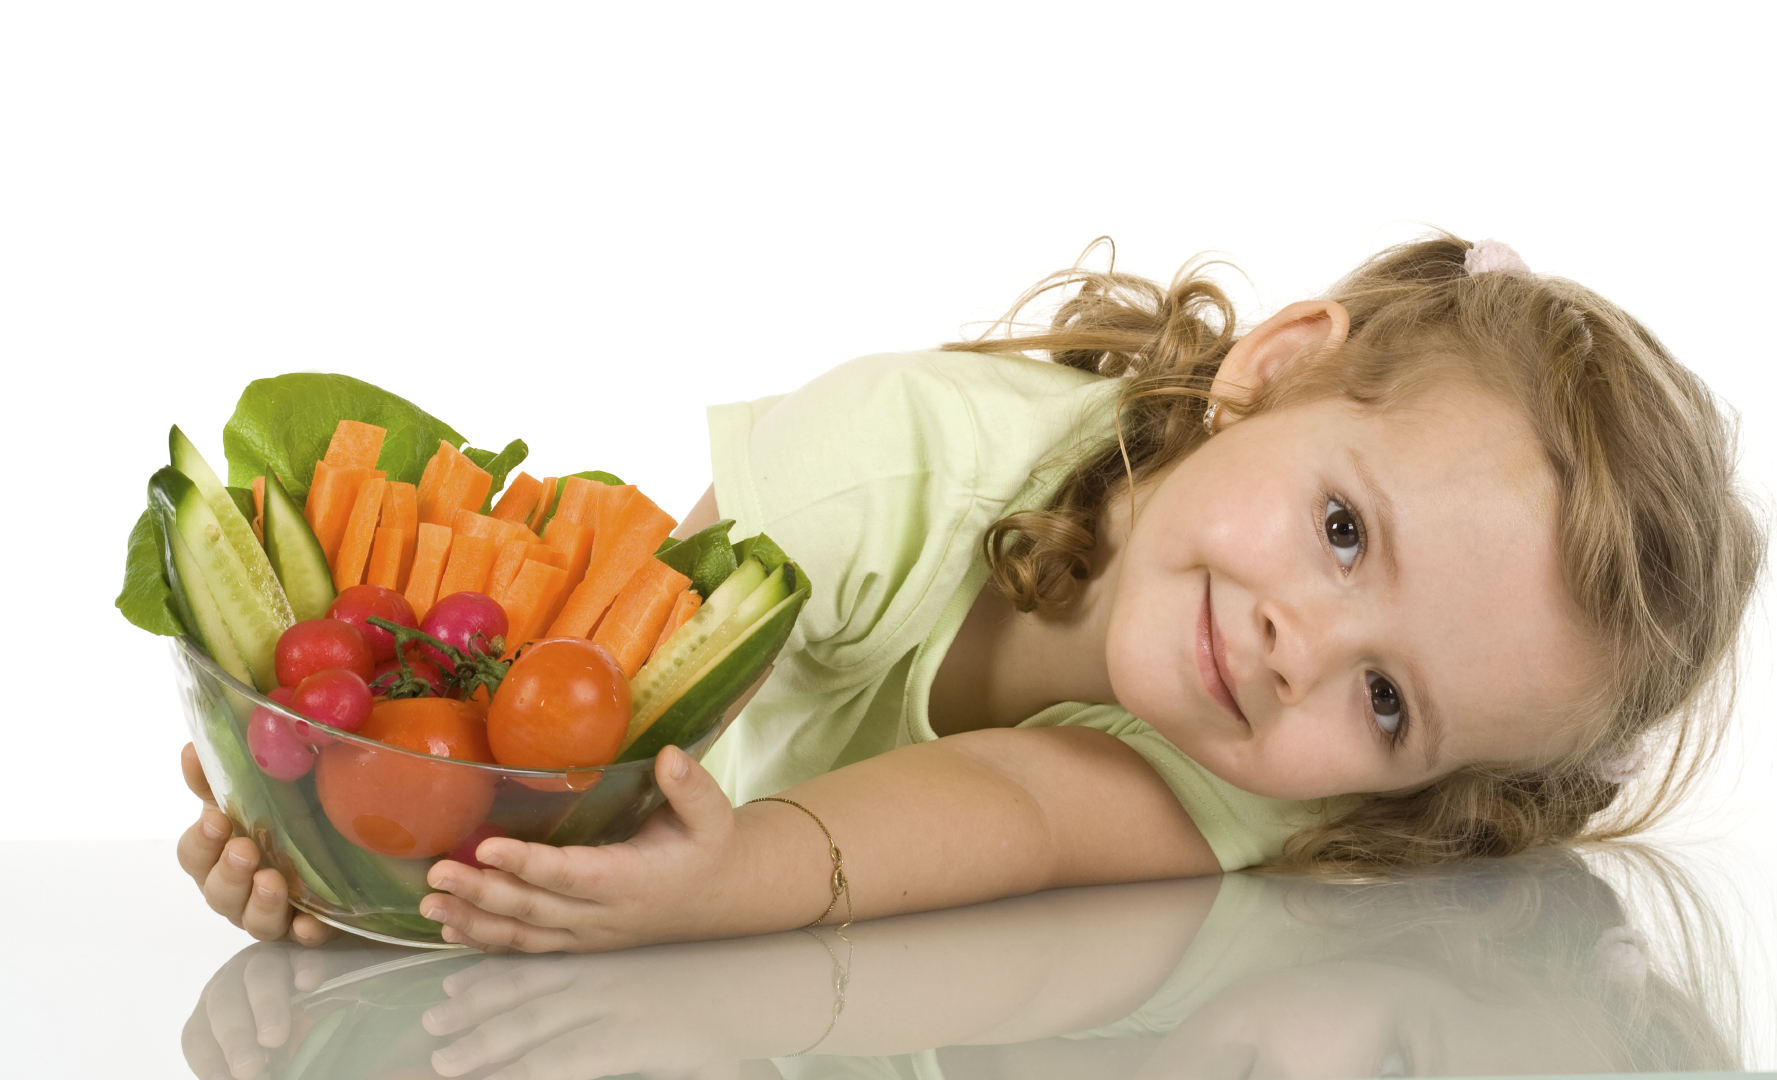 ΕΕ: Νέος κανονισμός για την προώθηση της υγιεινής διατροφής στα παιδιά